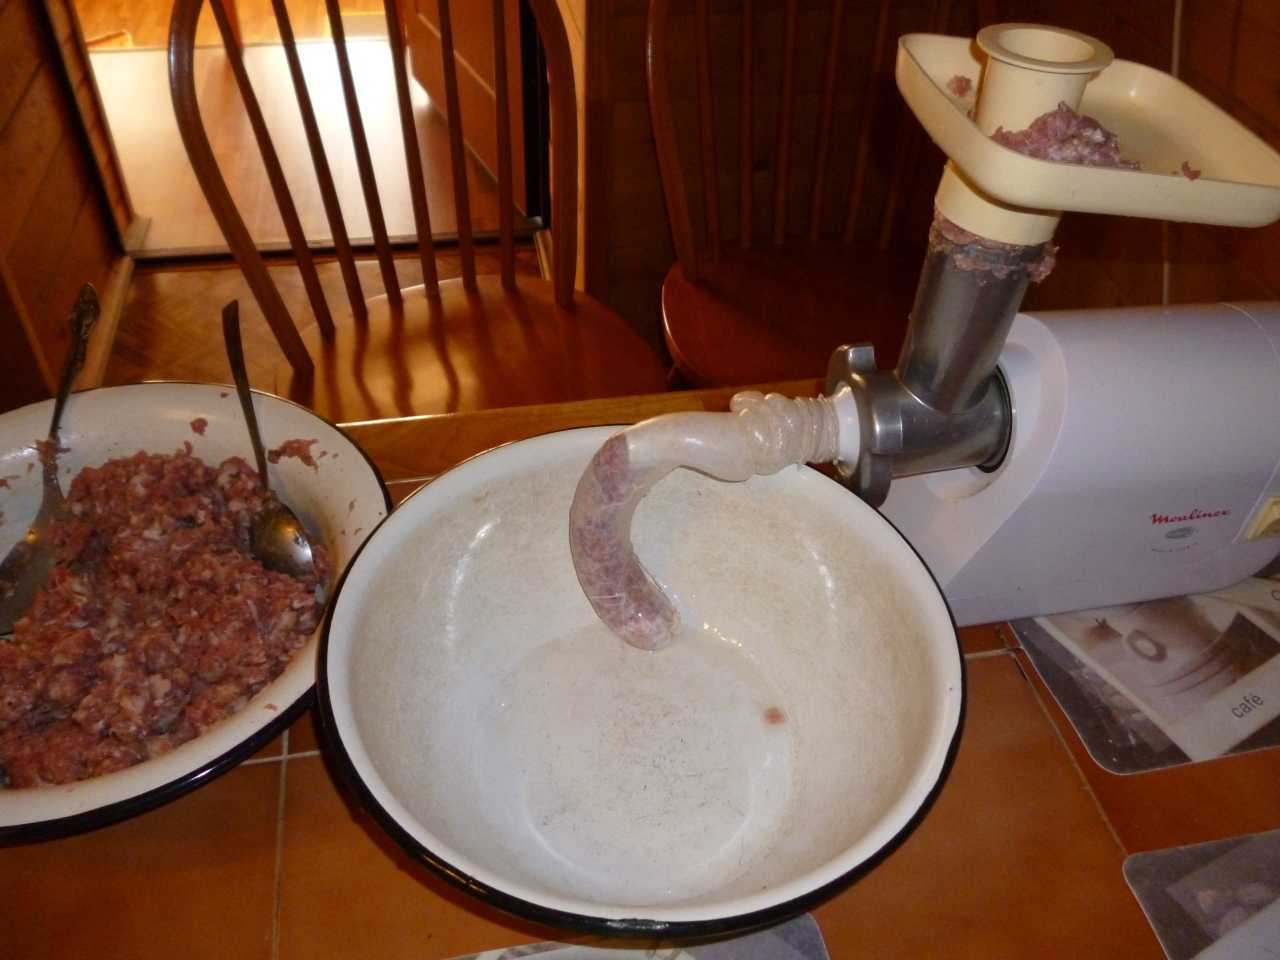 Рецепт домашней колбасы в кишке через мясорубку